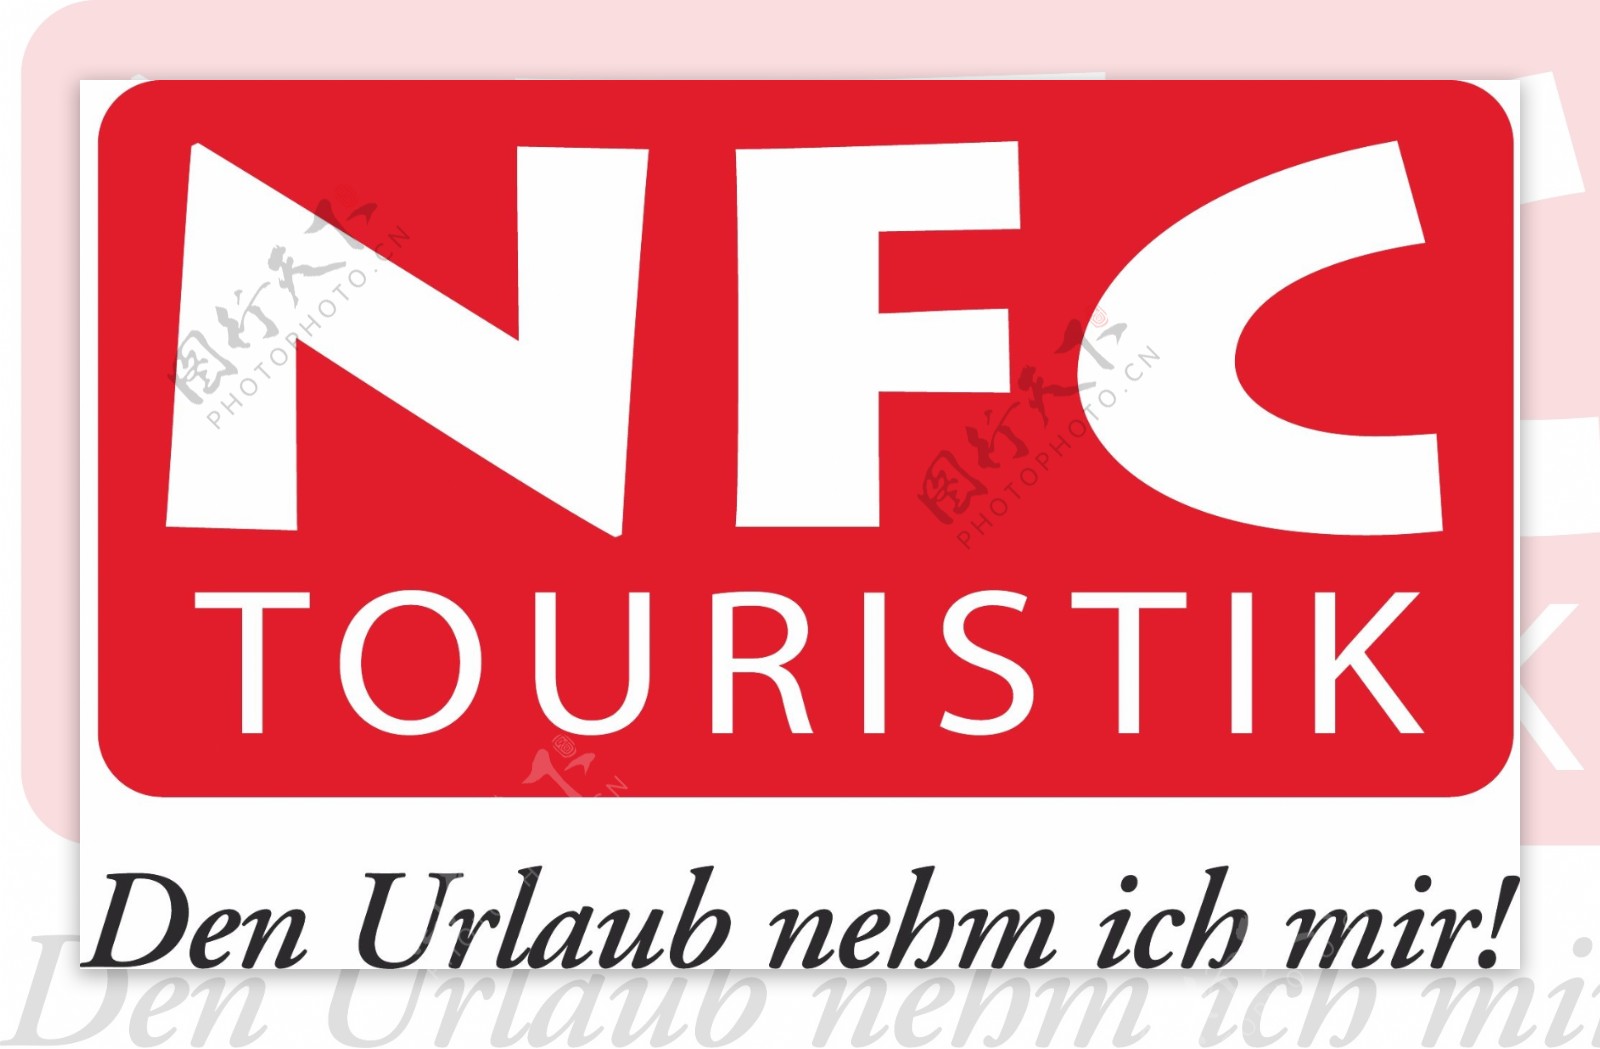 NFC旅游